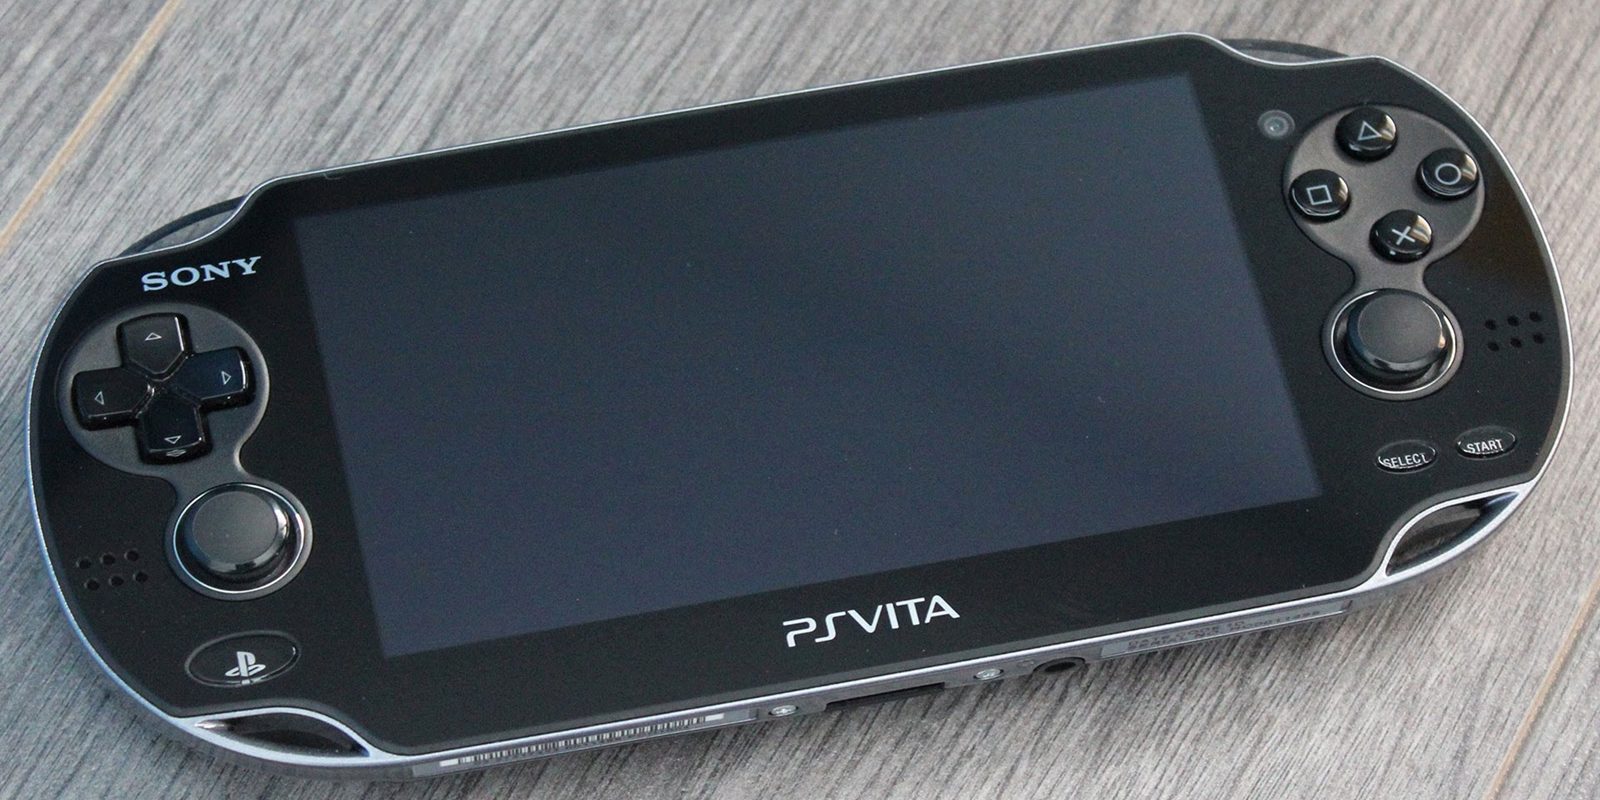 PS Vita no está muerta gracias a 'Shovel Knight' - Confirmada versión en formato físico